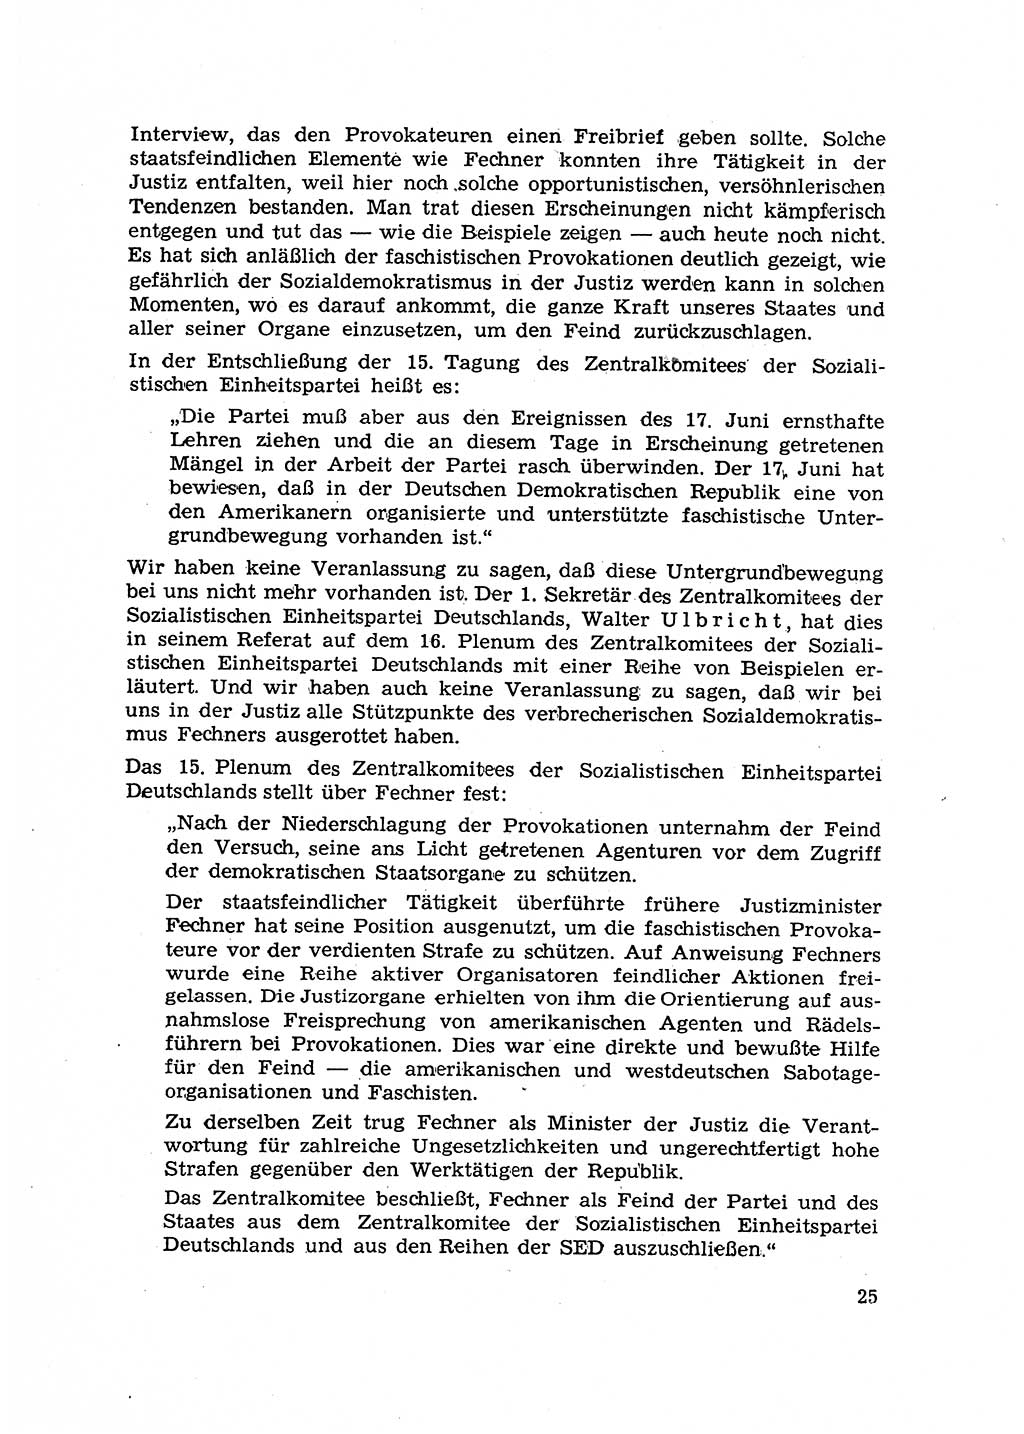 Hauptaufgaben der Justiz [Deutsche Demokratische Republik (DDR)] bei der Durchführung des neuen Kurses 1953, Seite 25 (Hpt.-Aufg. J. DDR 1953, S. 25)